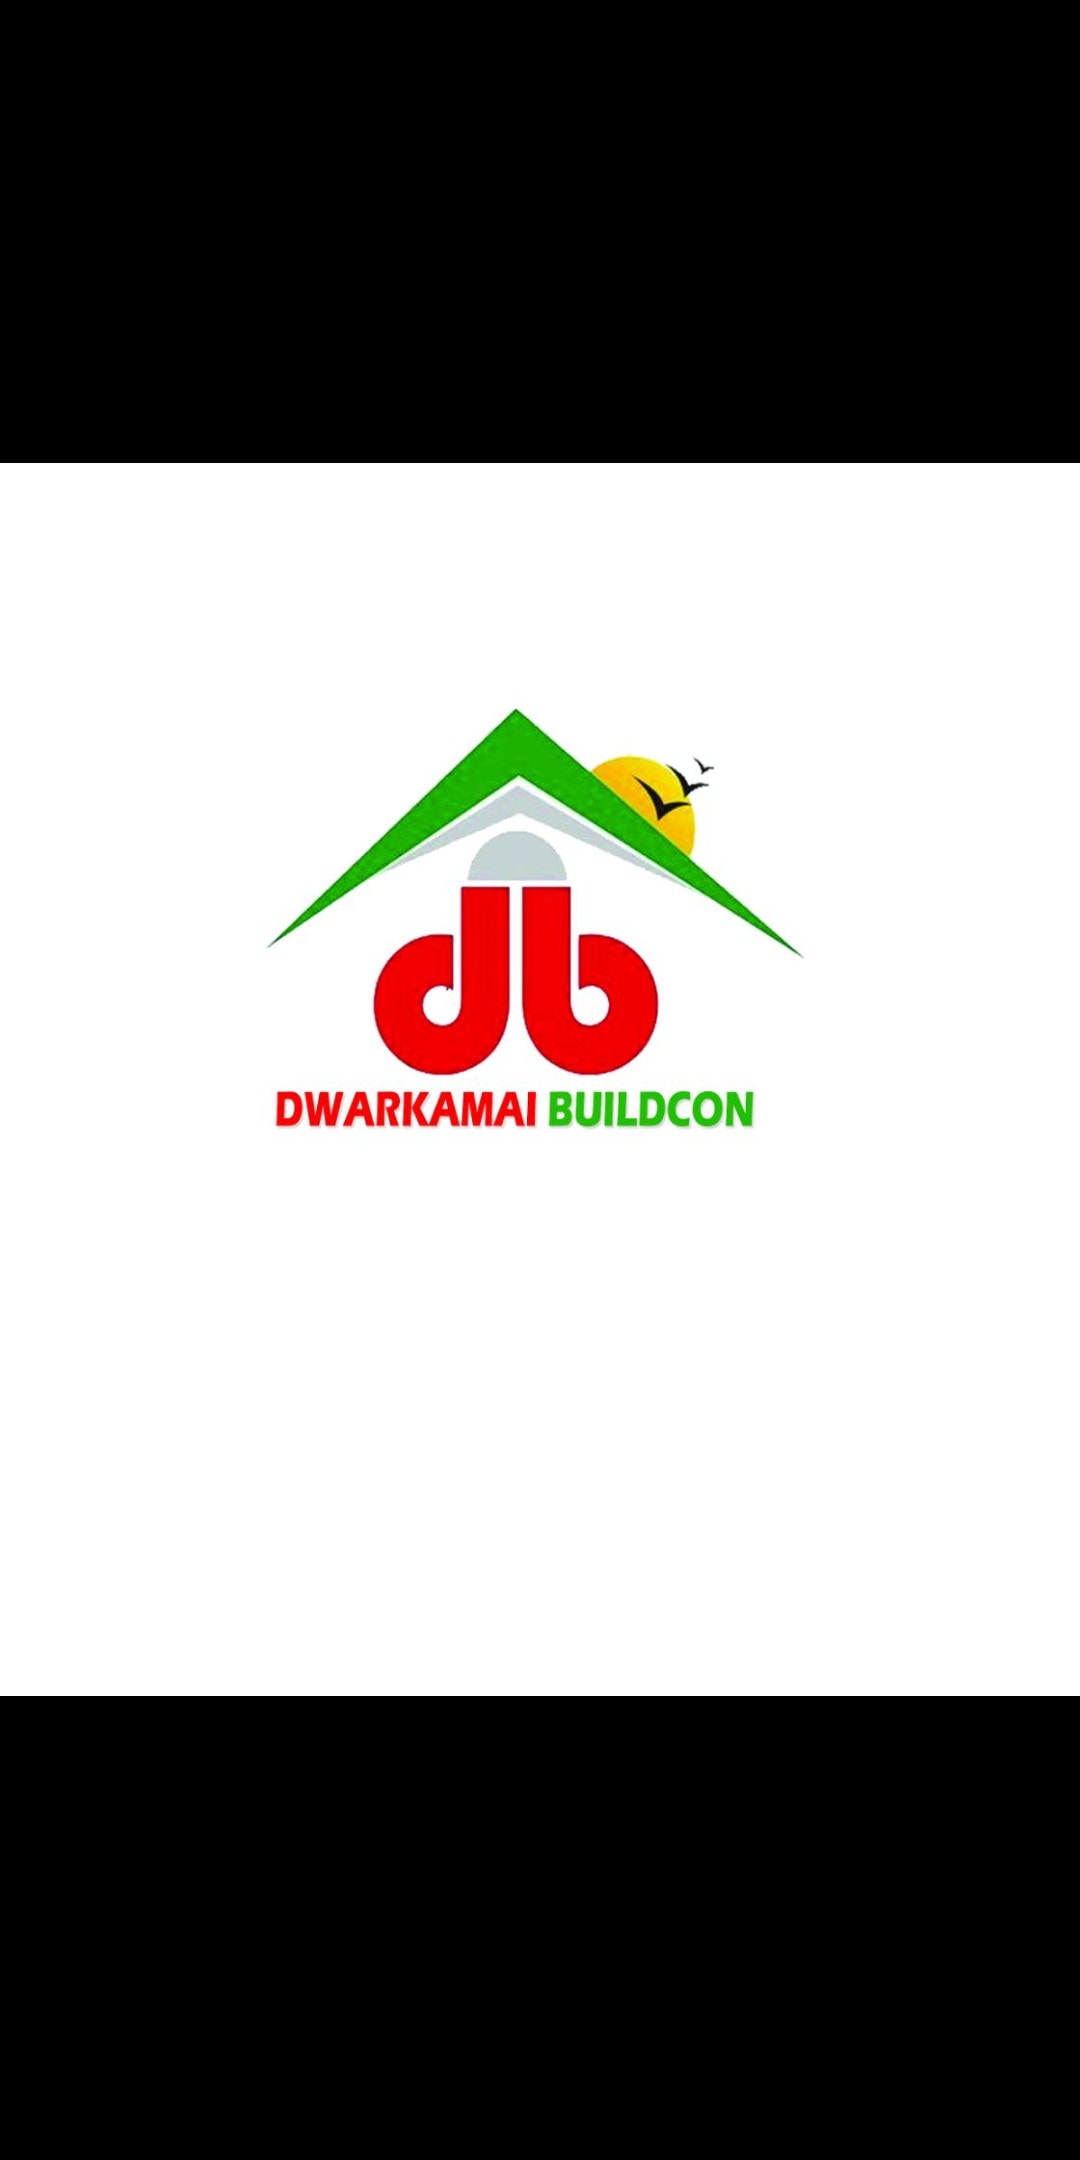 Dwarkamai Buildcon